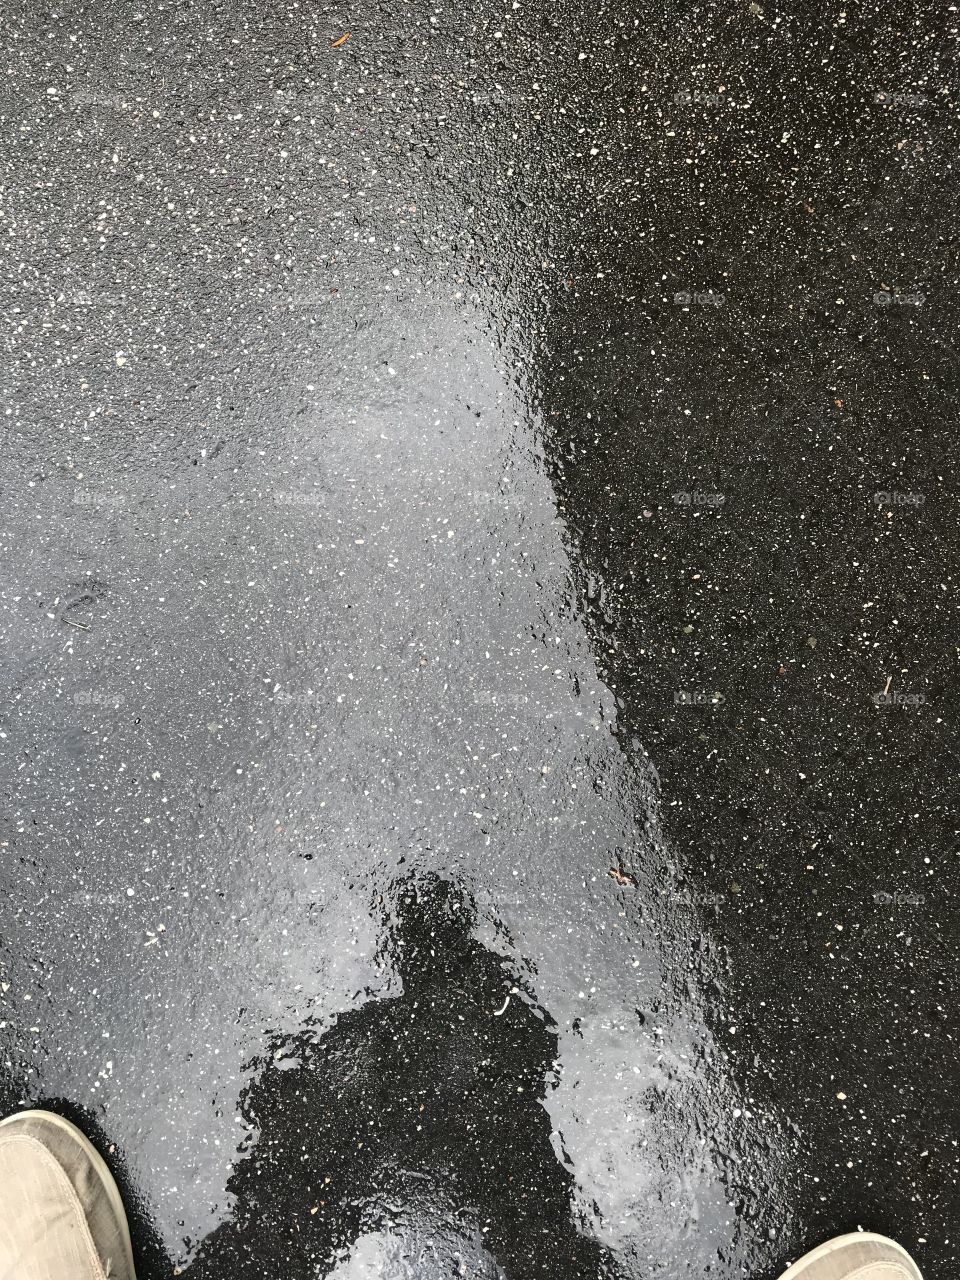 Rainy reflection 